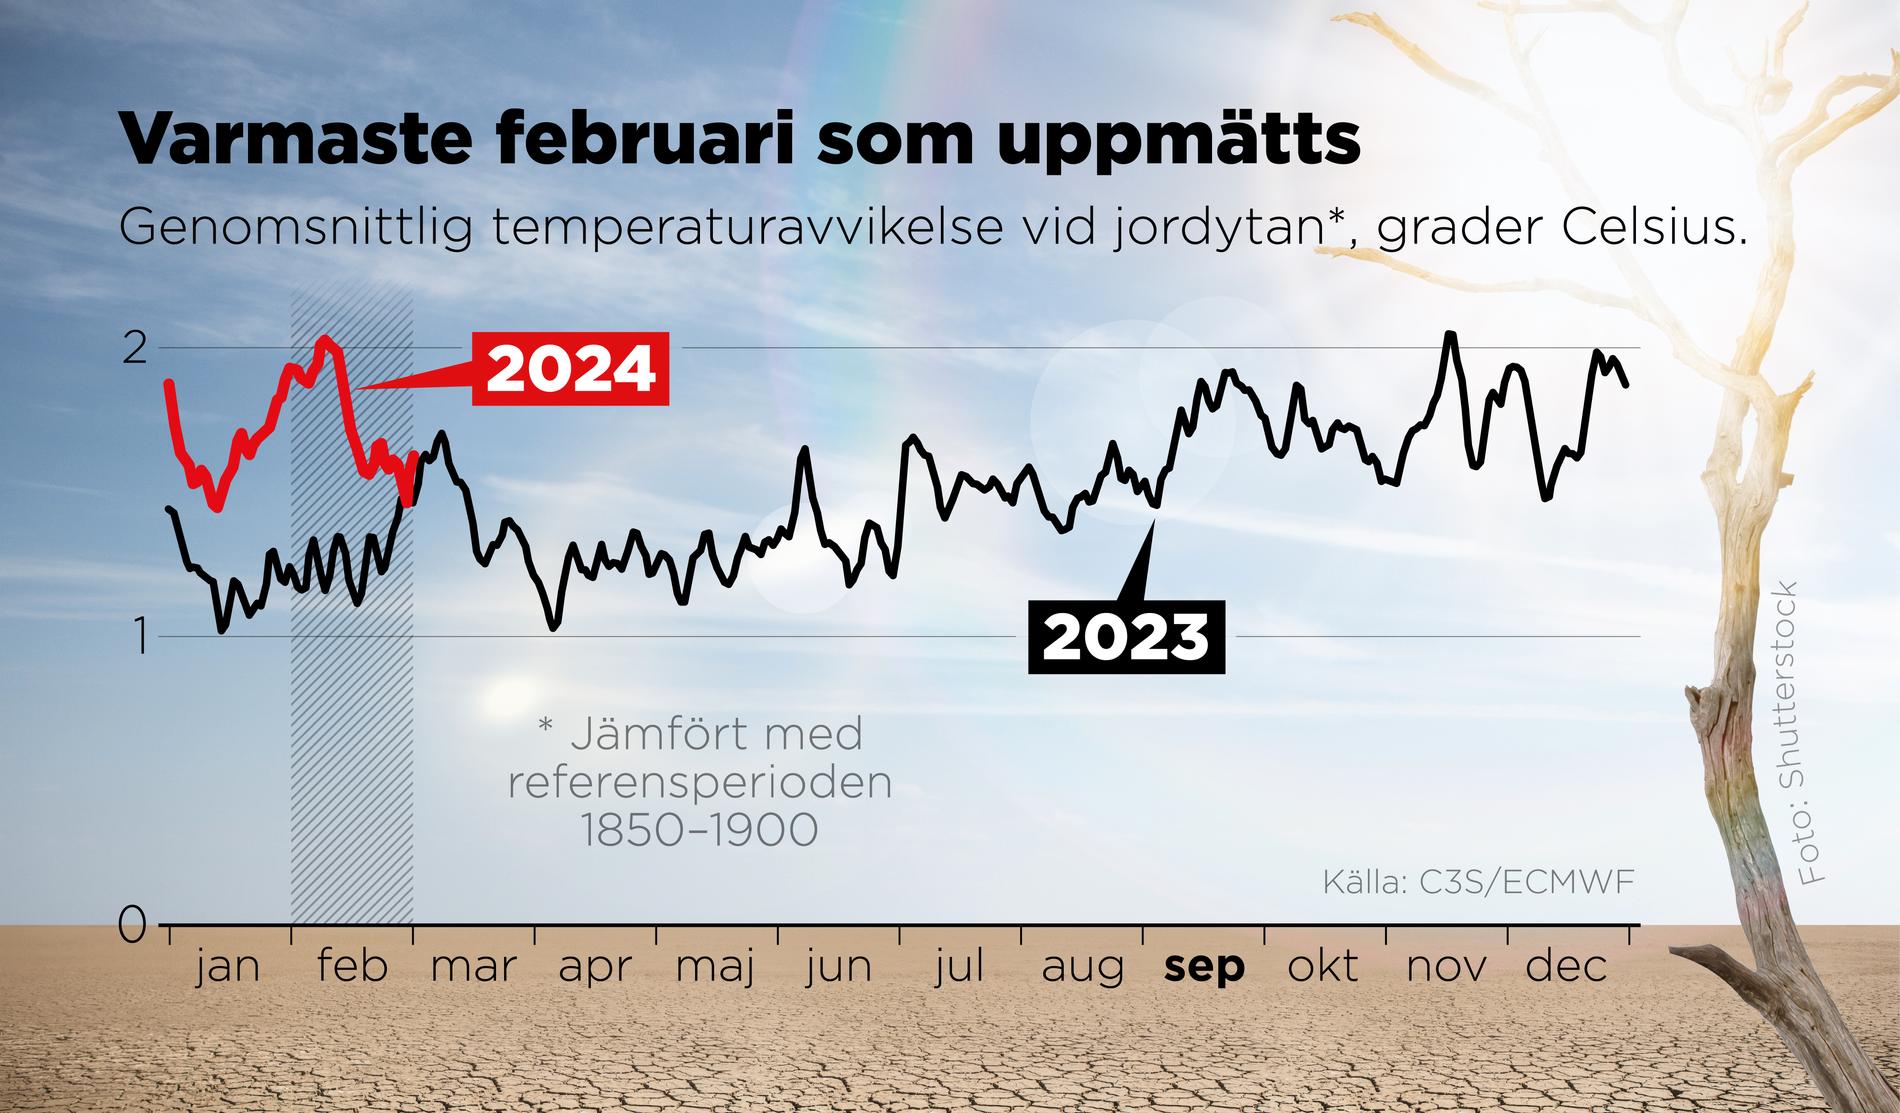 Genomsnittlig temperaturavvikelse vid jordytan i grader Celsius jämfört med referensperioden 1850–1900.